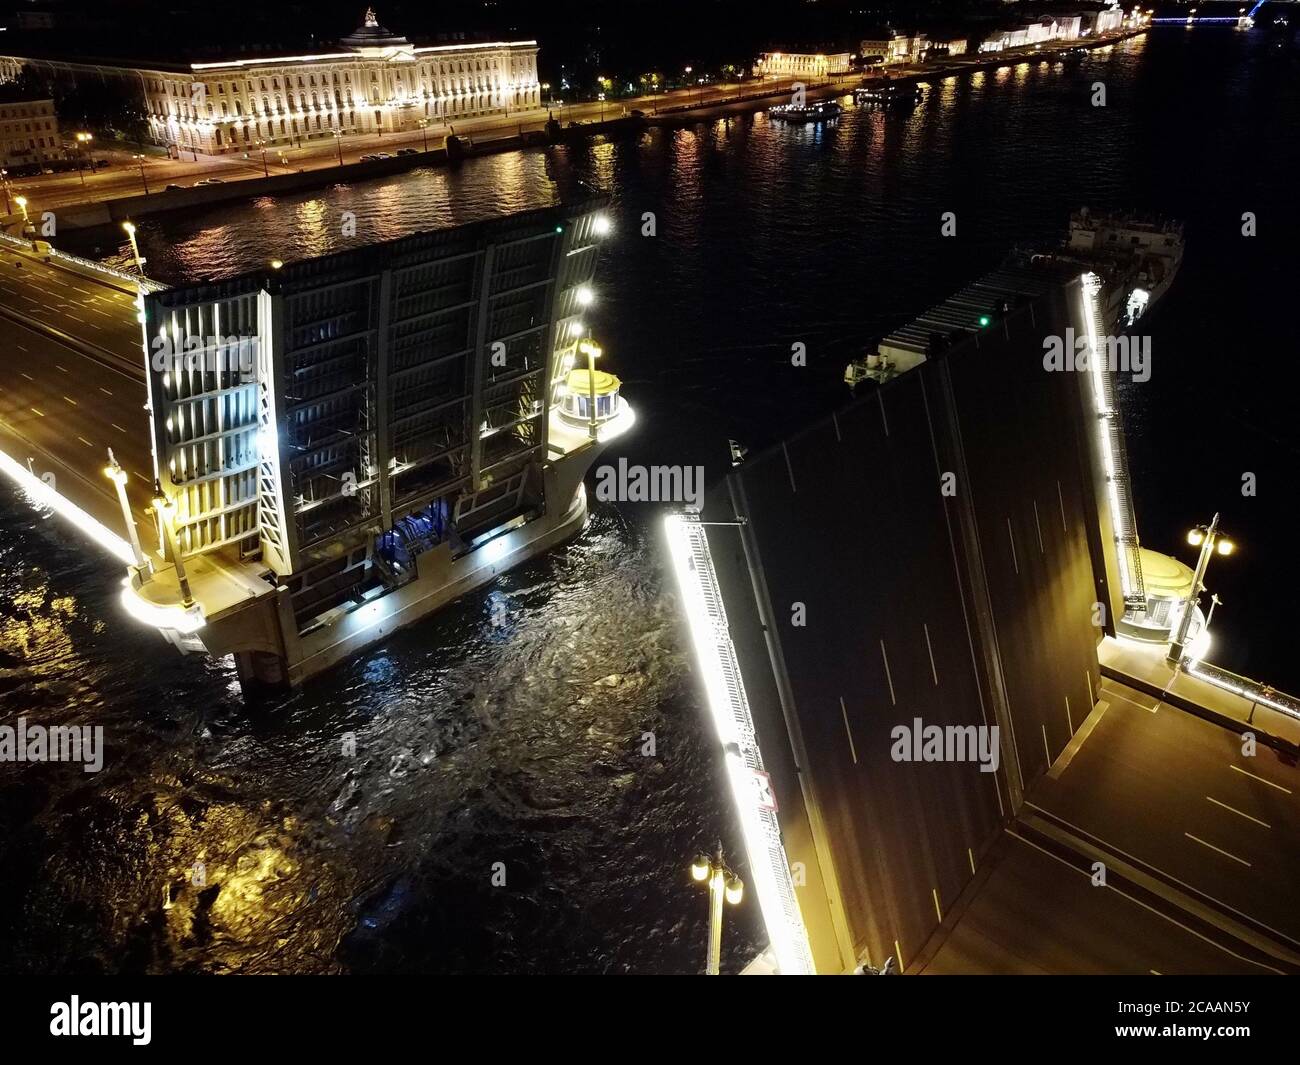 Nachtstadt aus der Vogelperspektive. Nacht Petersburg. Russland. St. Petersburg Panorama. Stockfoto